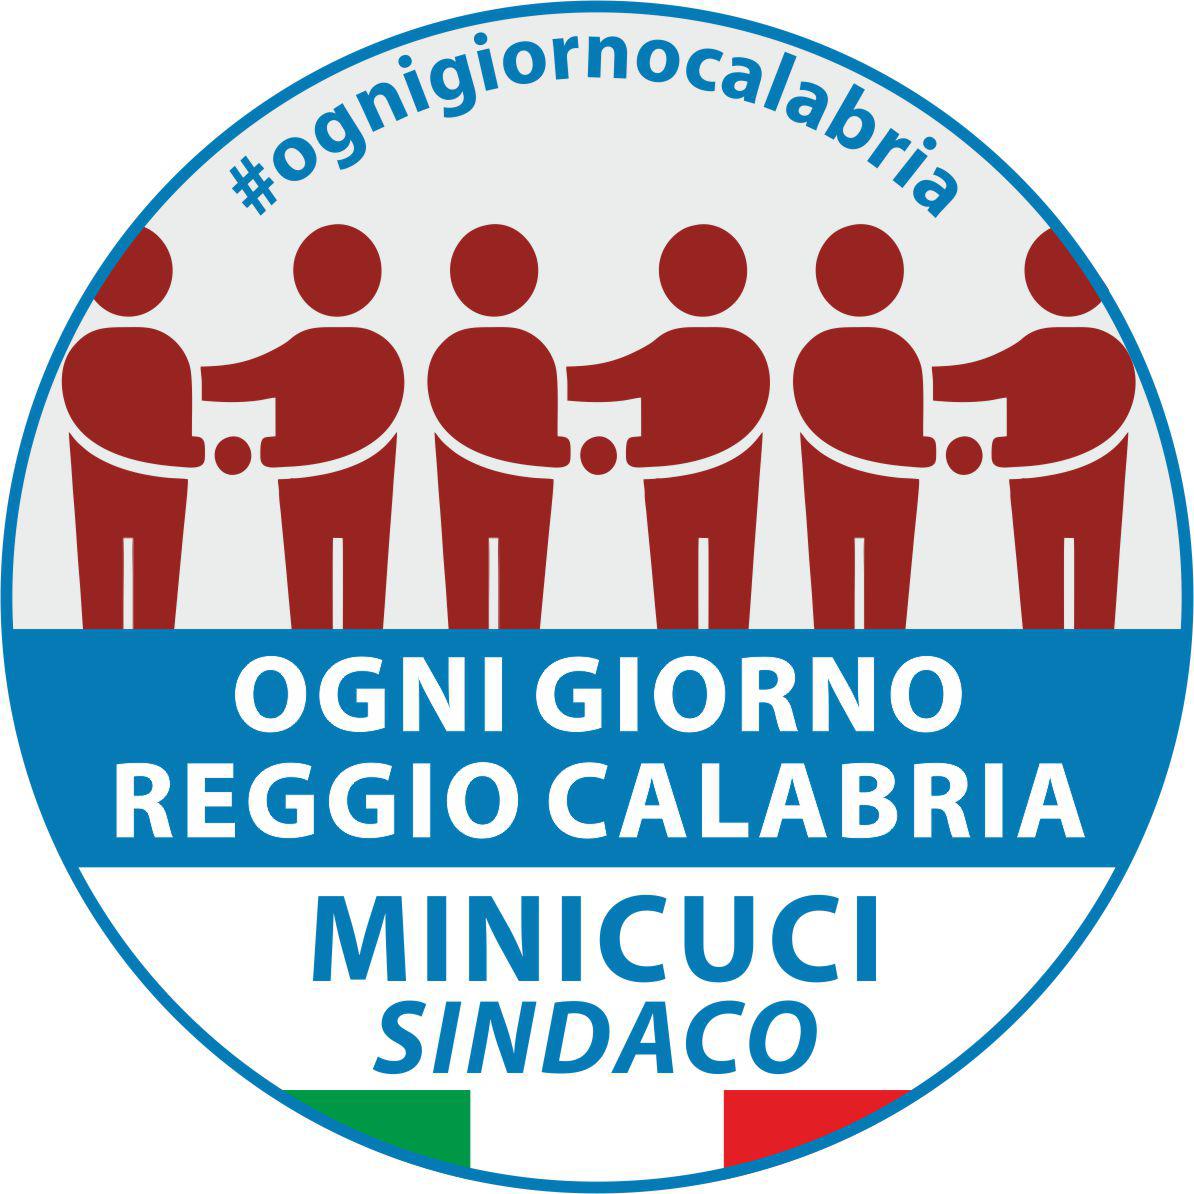 Elezioni Reggio Calabria, presentata la lista “Ogni giorno” per Antonino Minicuci